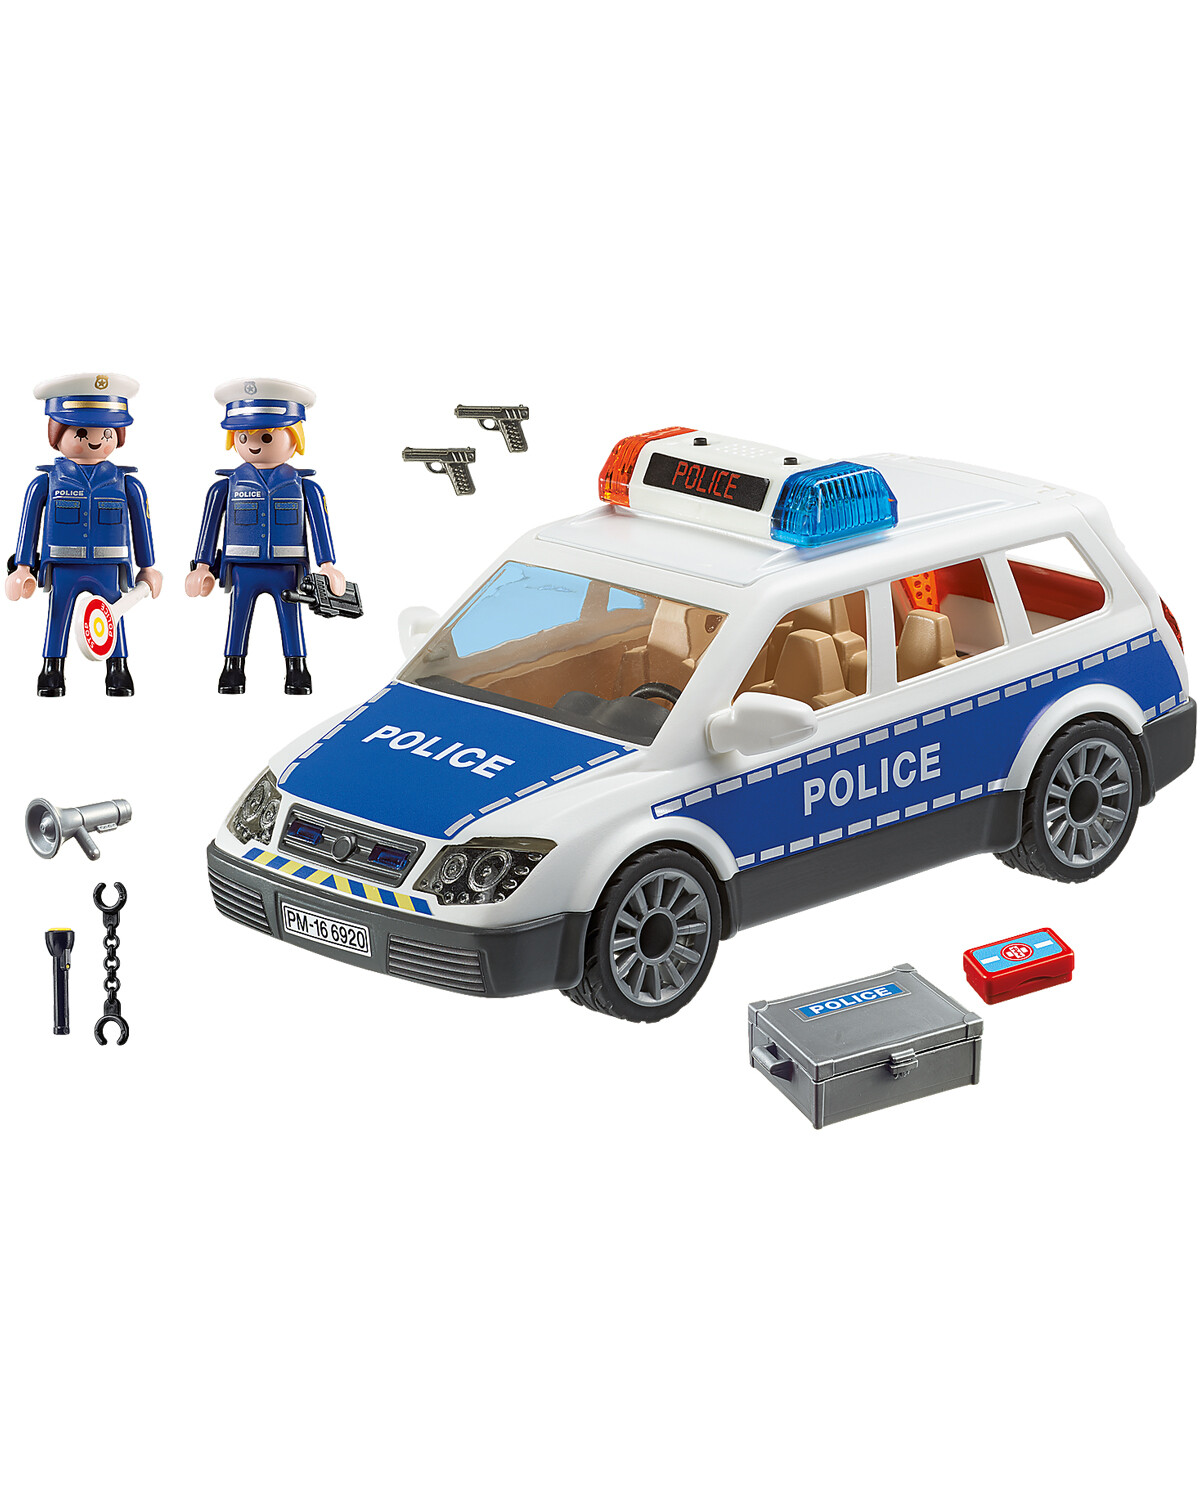 Coche policía-sirena POLICE CAR Hape